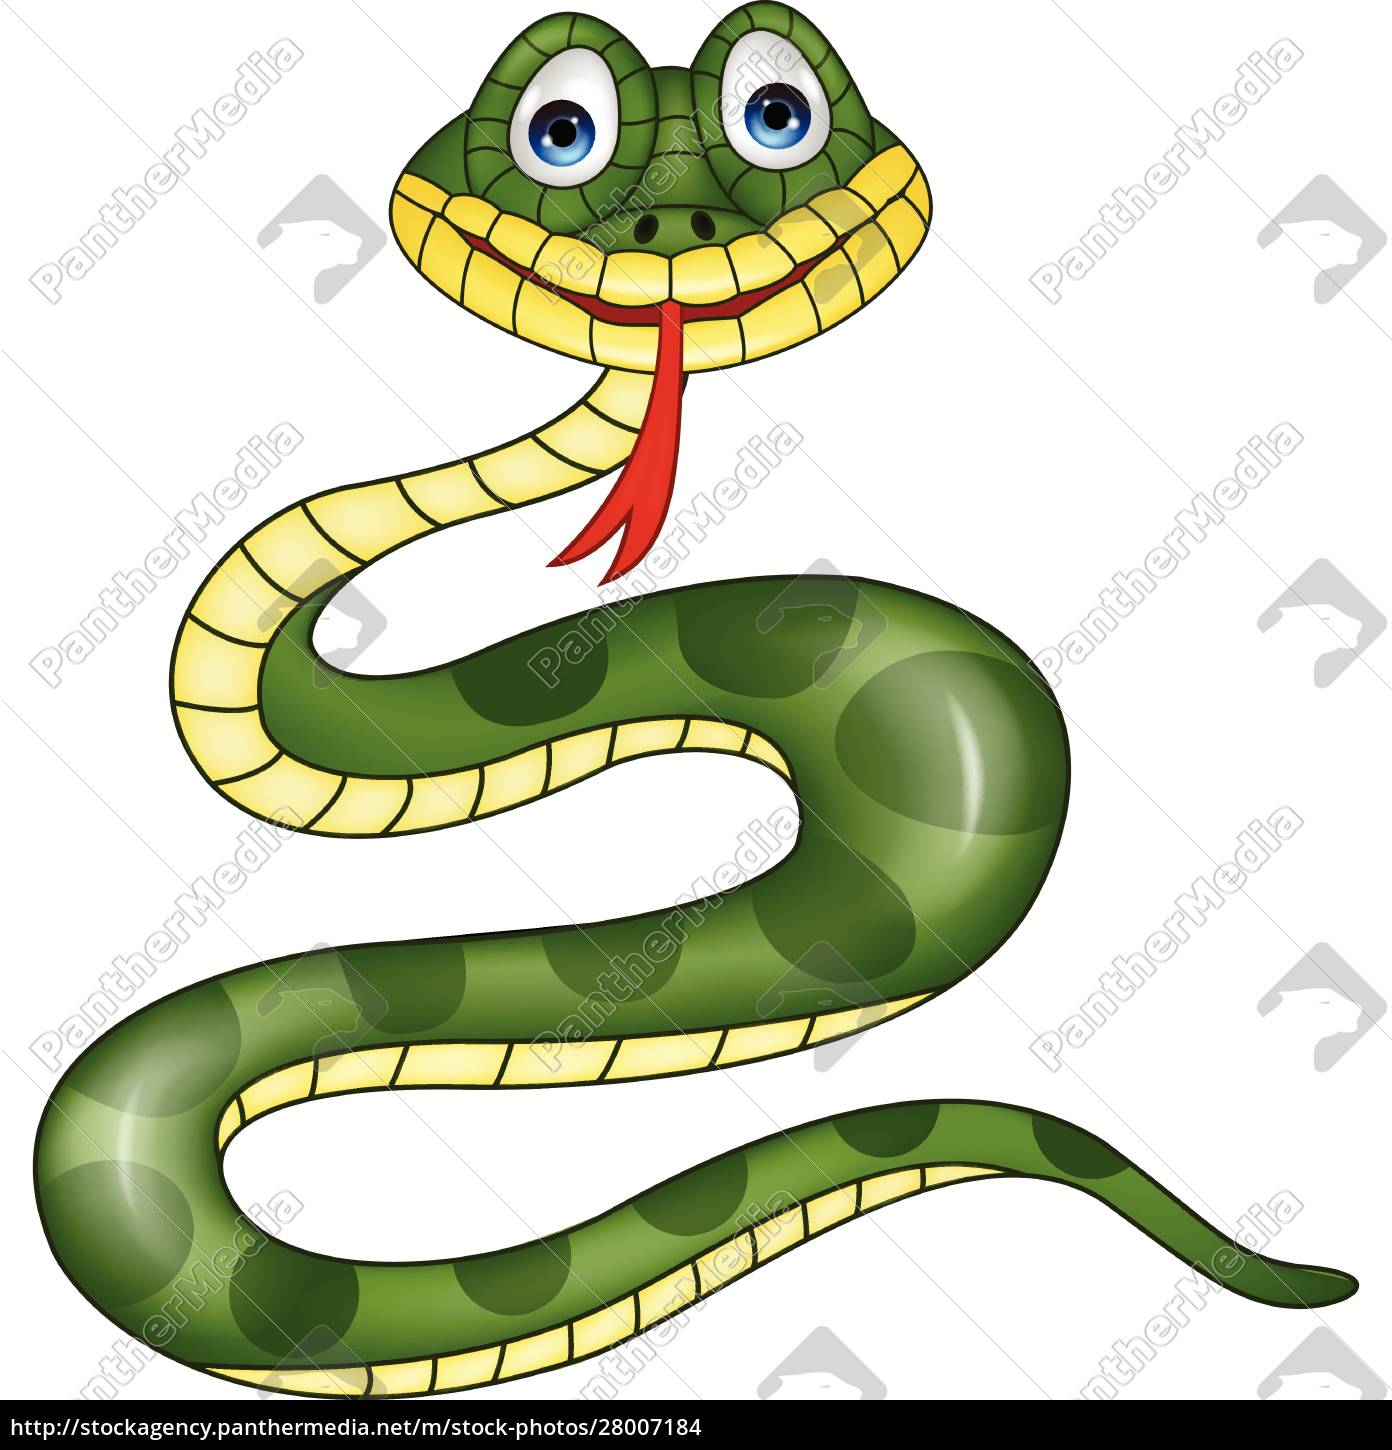 Cobra ou serpente? Qual o nome correto: cobra ou serpente? - Escola Kids